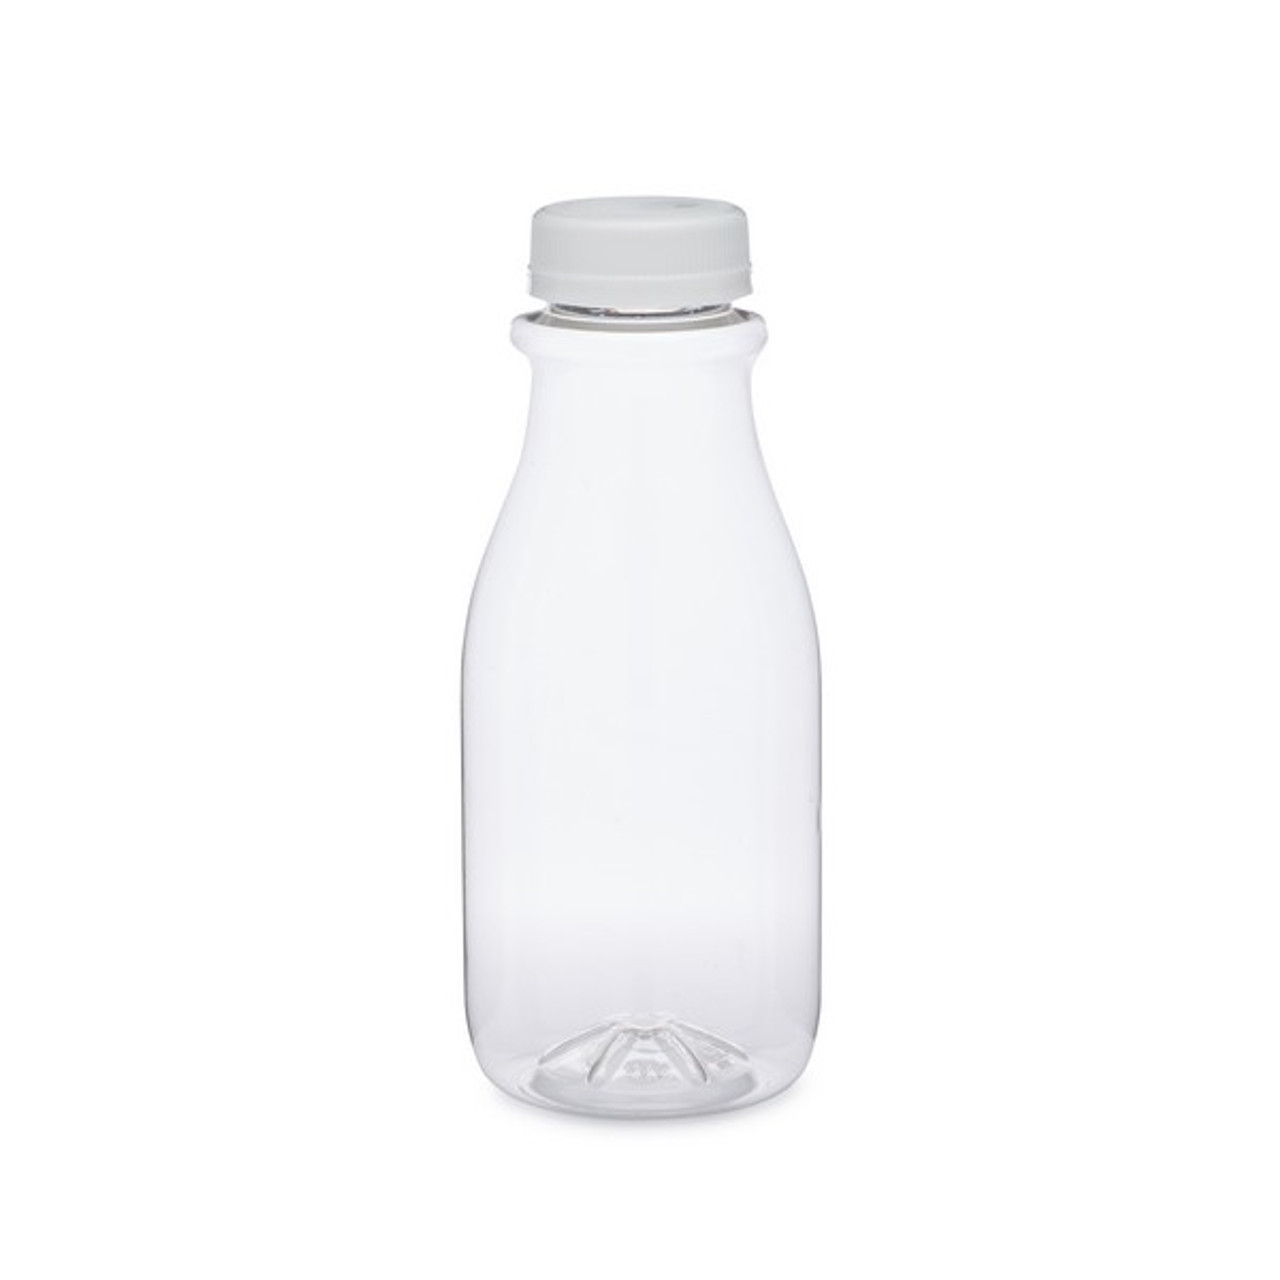 12oz Empty Clear PET Plastic Juice Bottles With Black Caps 